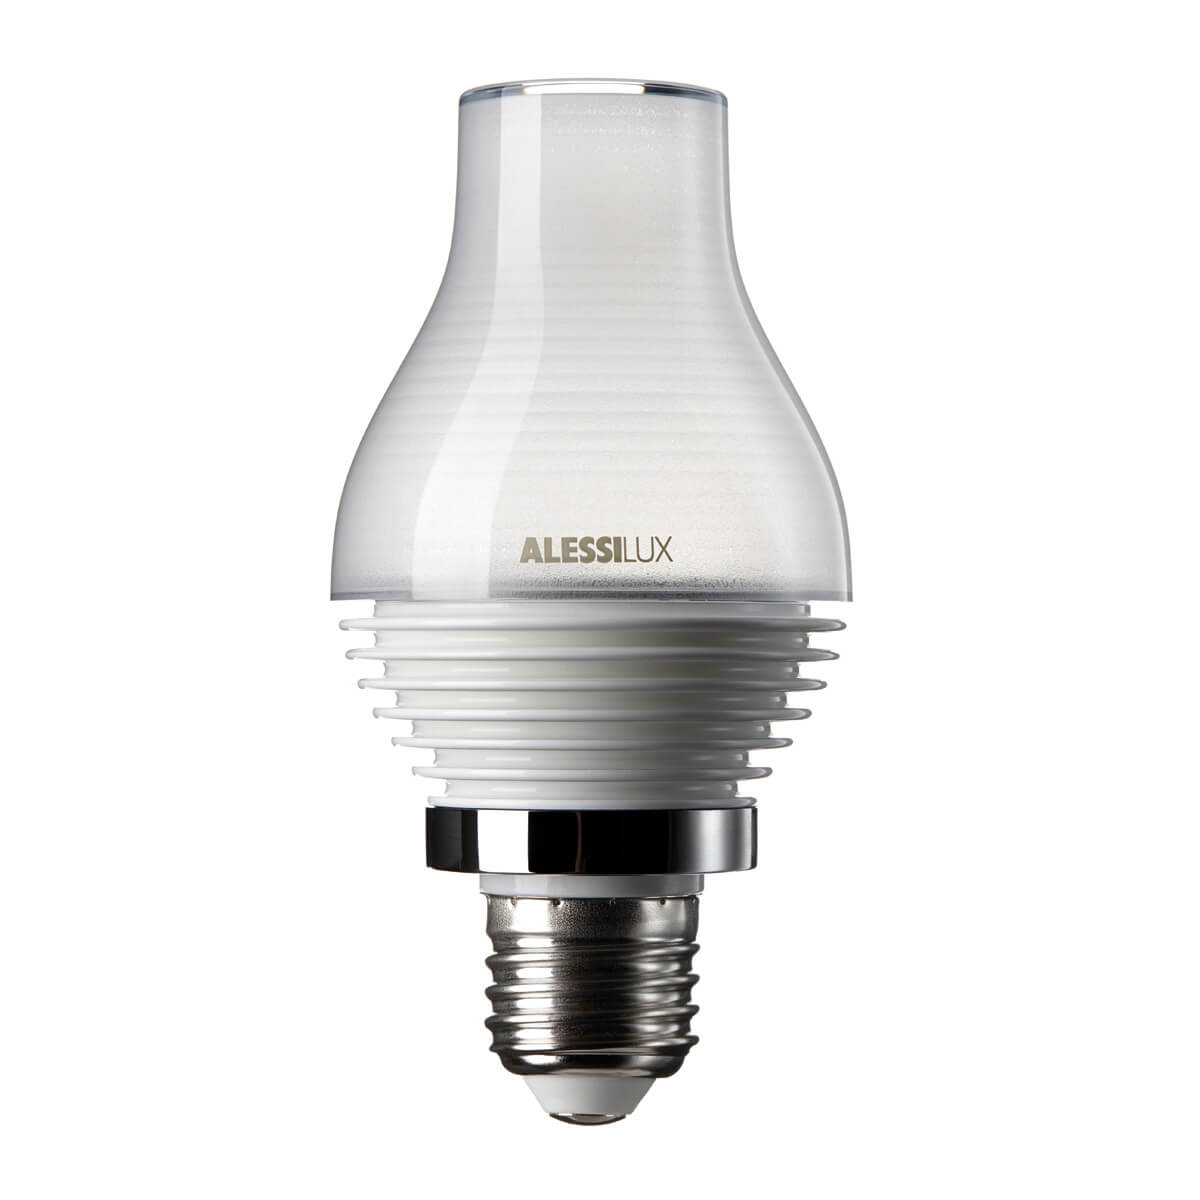 Paraffina, LED light bulb for Alessilux